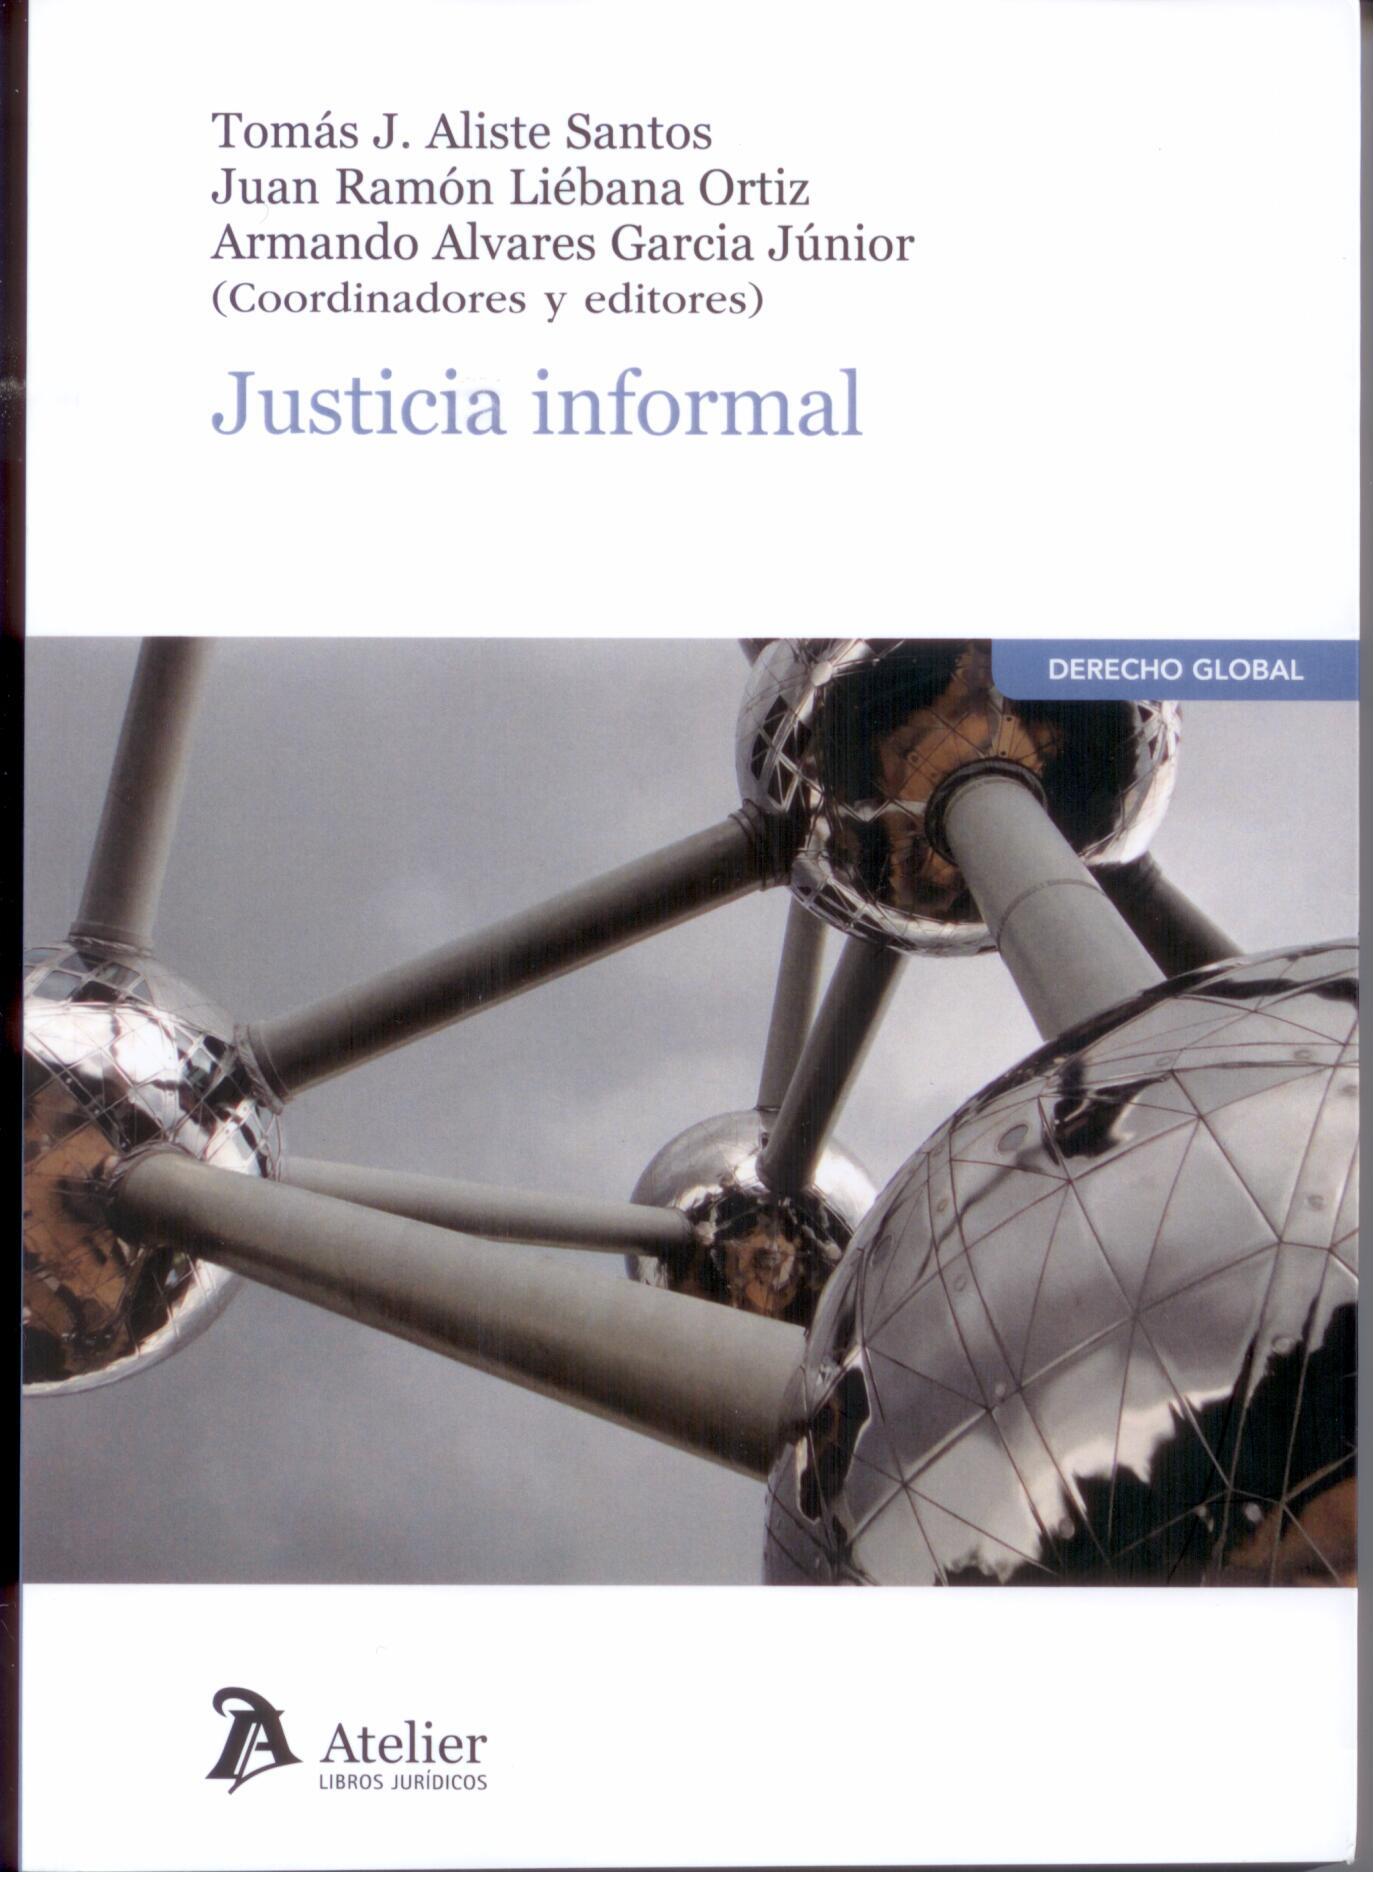 Imagen de portada del libro Justicia informal